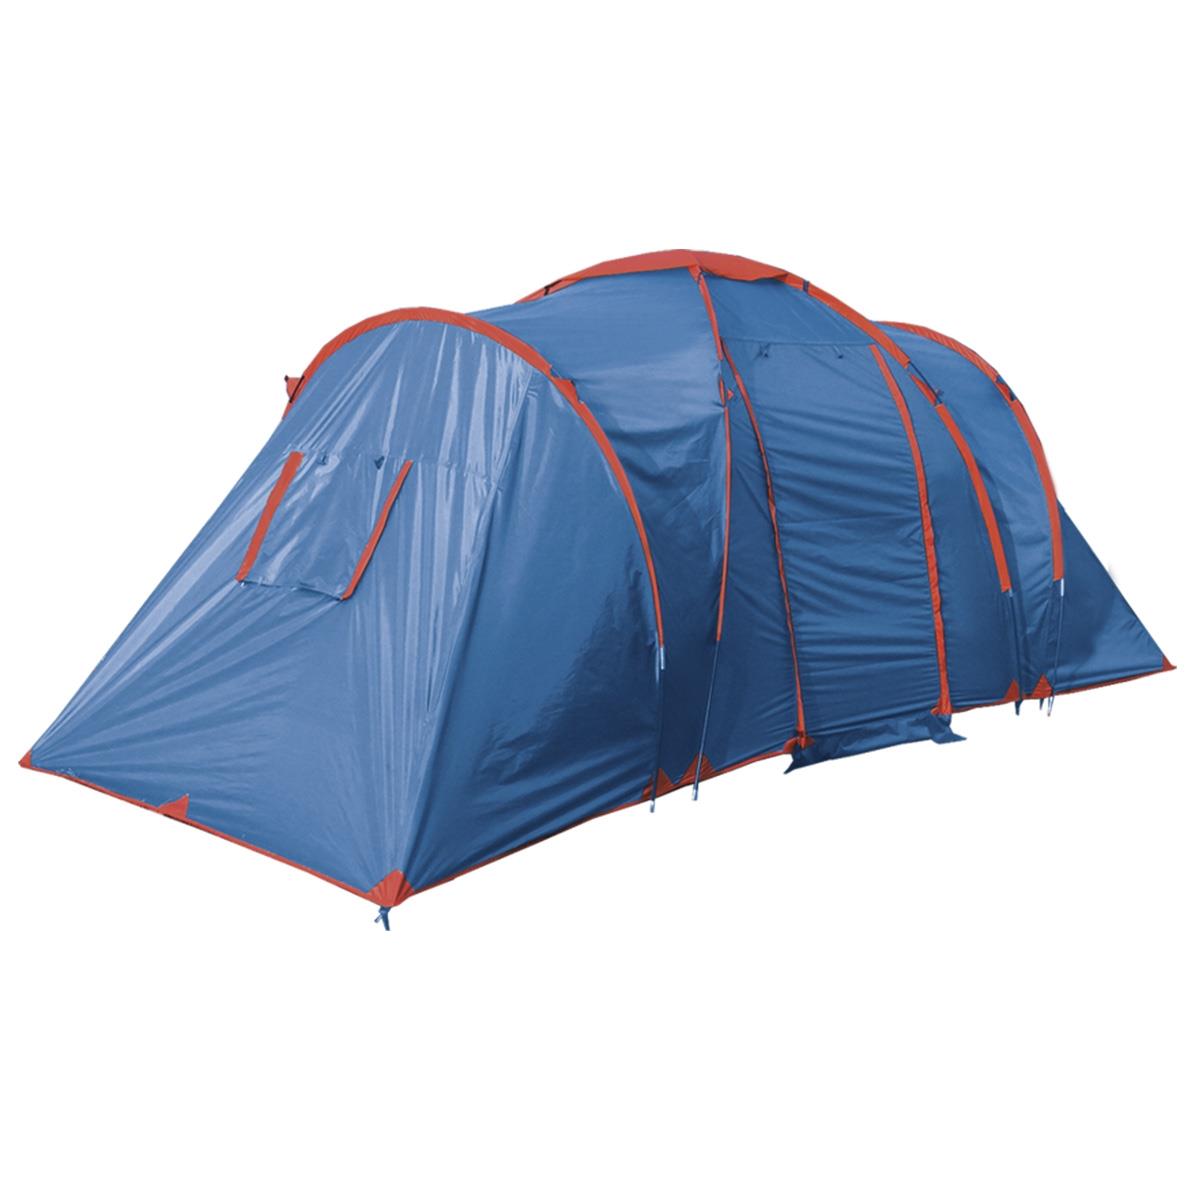 Палатка Gemini (T0487) BTrace палатка туристическая dakota 4 р 210 х 240 х 140 см 4 местная двухслойная